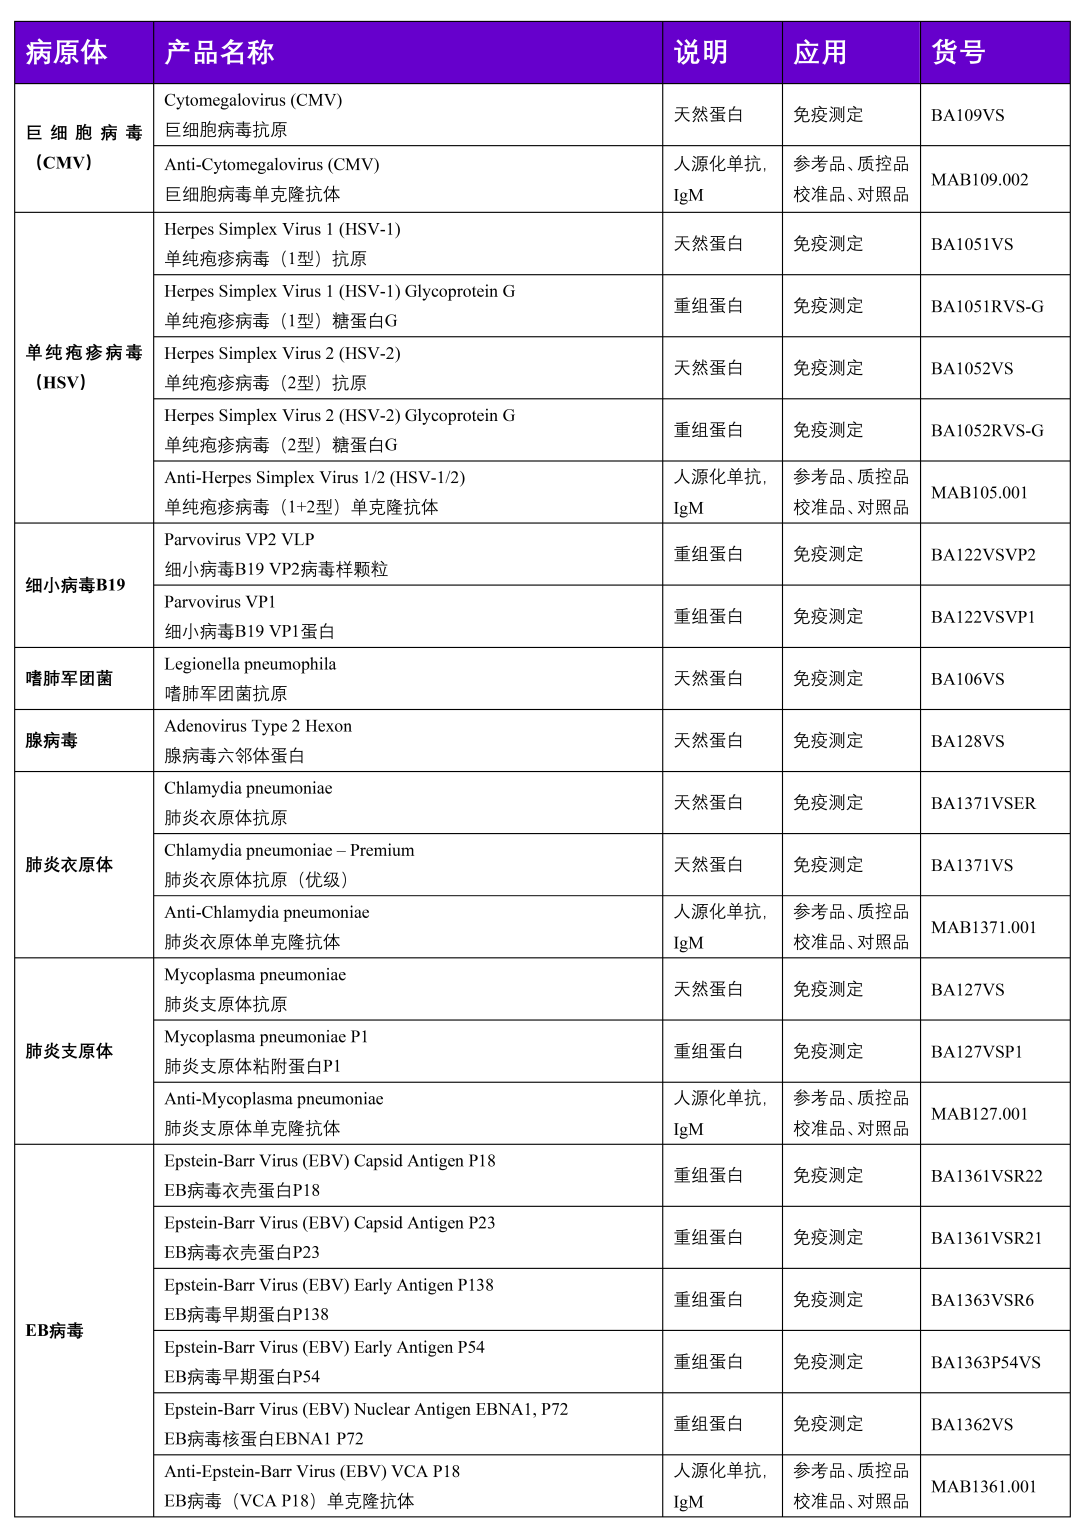 北京协和医院关于“不明原因严重急性肝炎”的诊疗建议